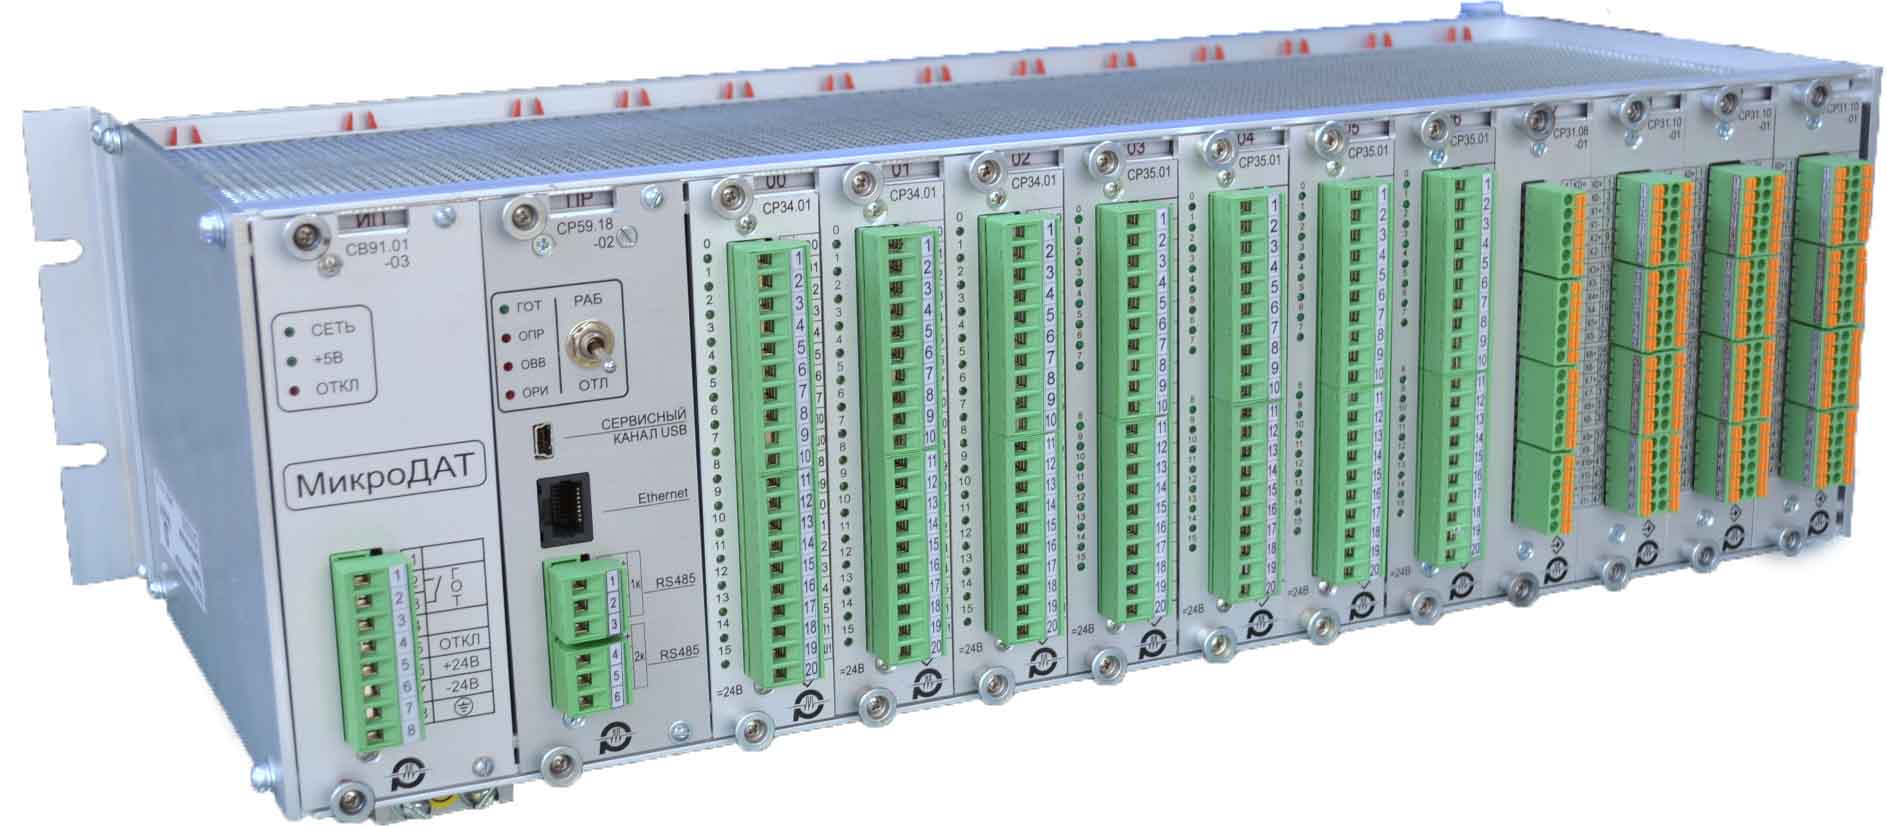 Программируемый логический контроллер МK202